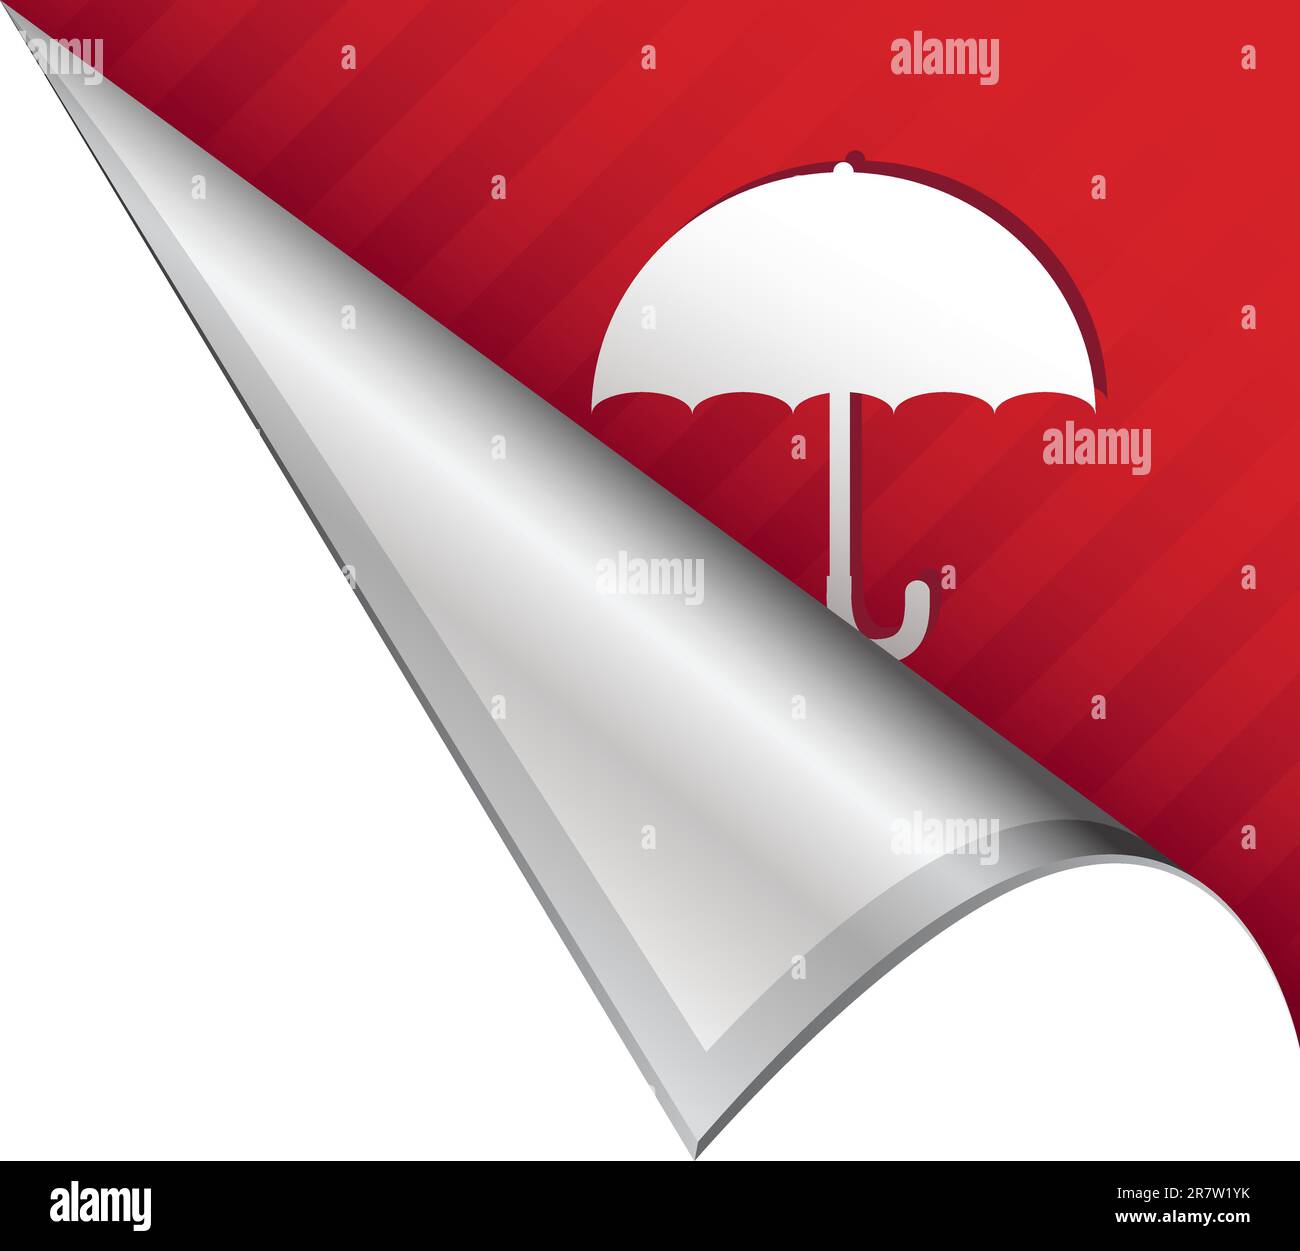 Regenschirm- oder Schutzsymbol auf vektorgeschälter Ecklasche geeignet für die Verwendung in Printmedien, auf Websites oder in Werbematerialien. Stock Vektor